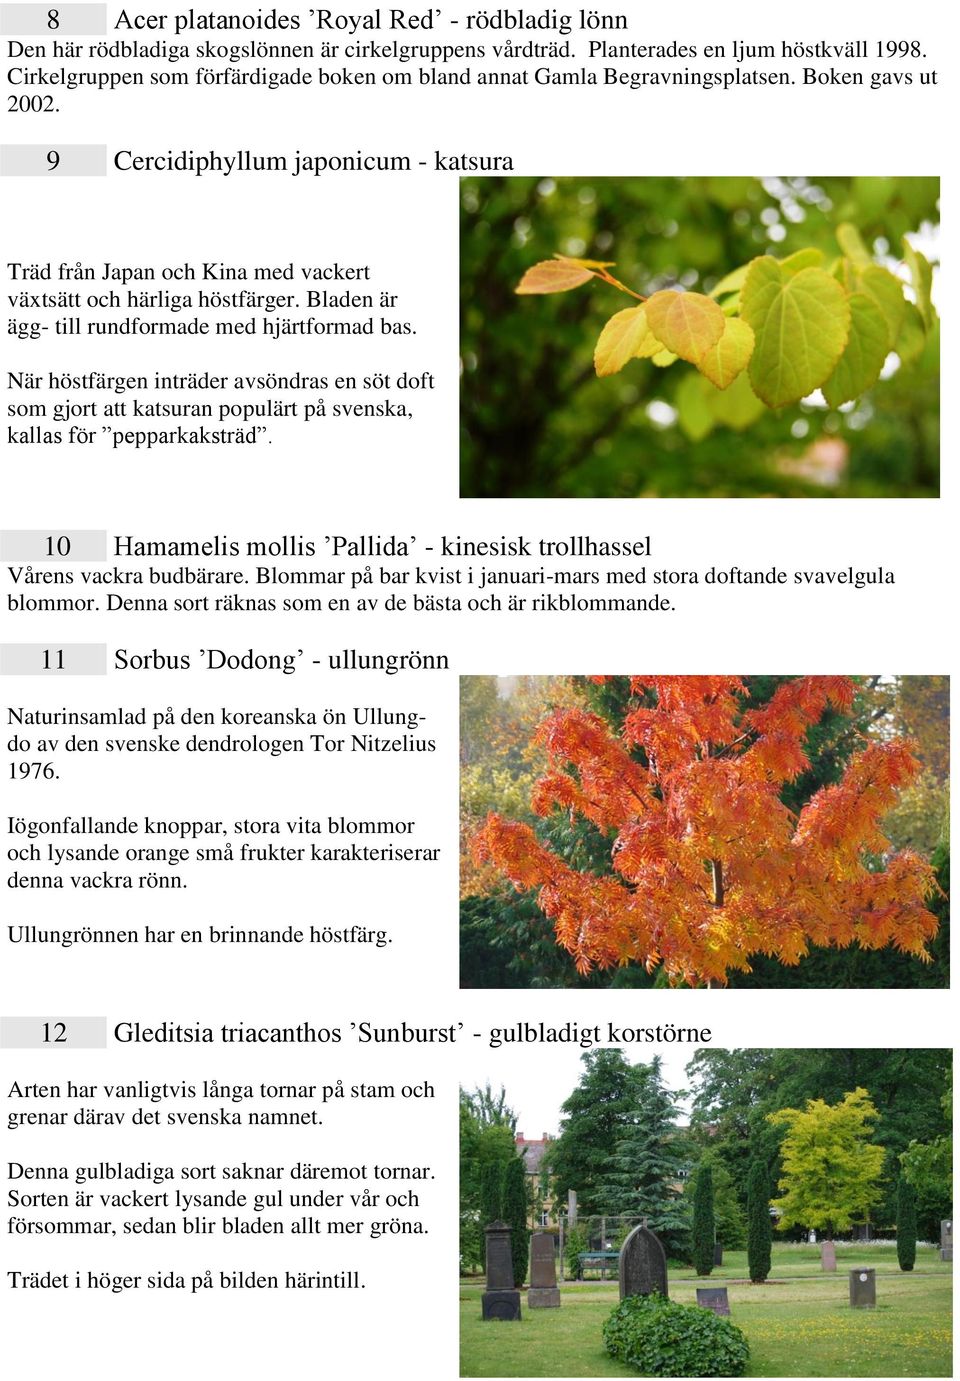 9 Cercidiphyllum japonicum - katsura Träd från Japan och Kina med vackert växtsätt och härliga höstfärger. Bladen är ägg- till rundformade med hjärtformad bas.